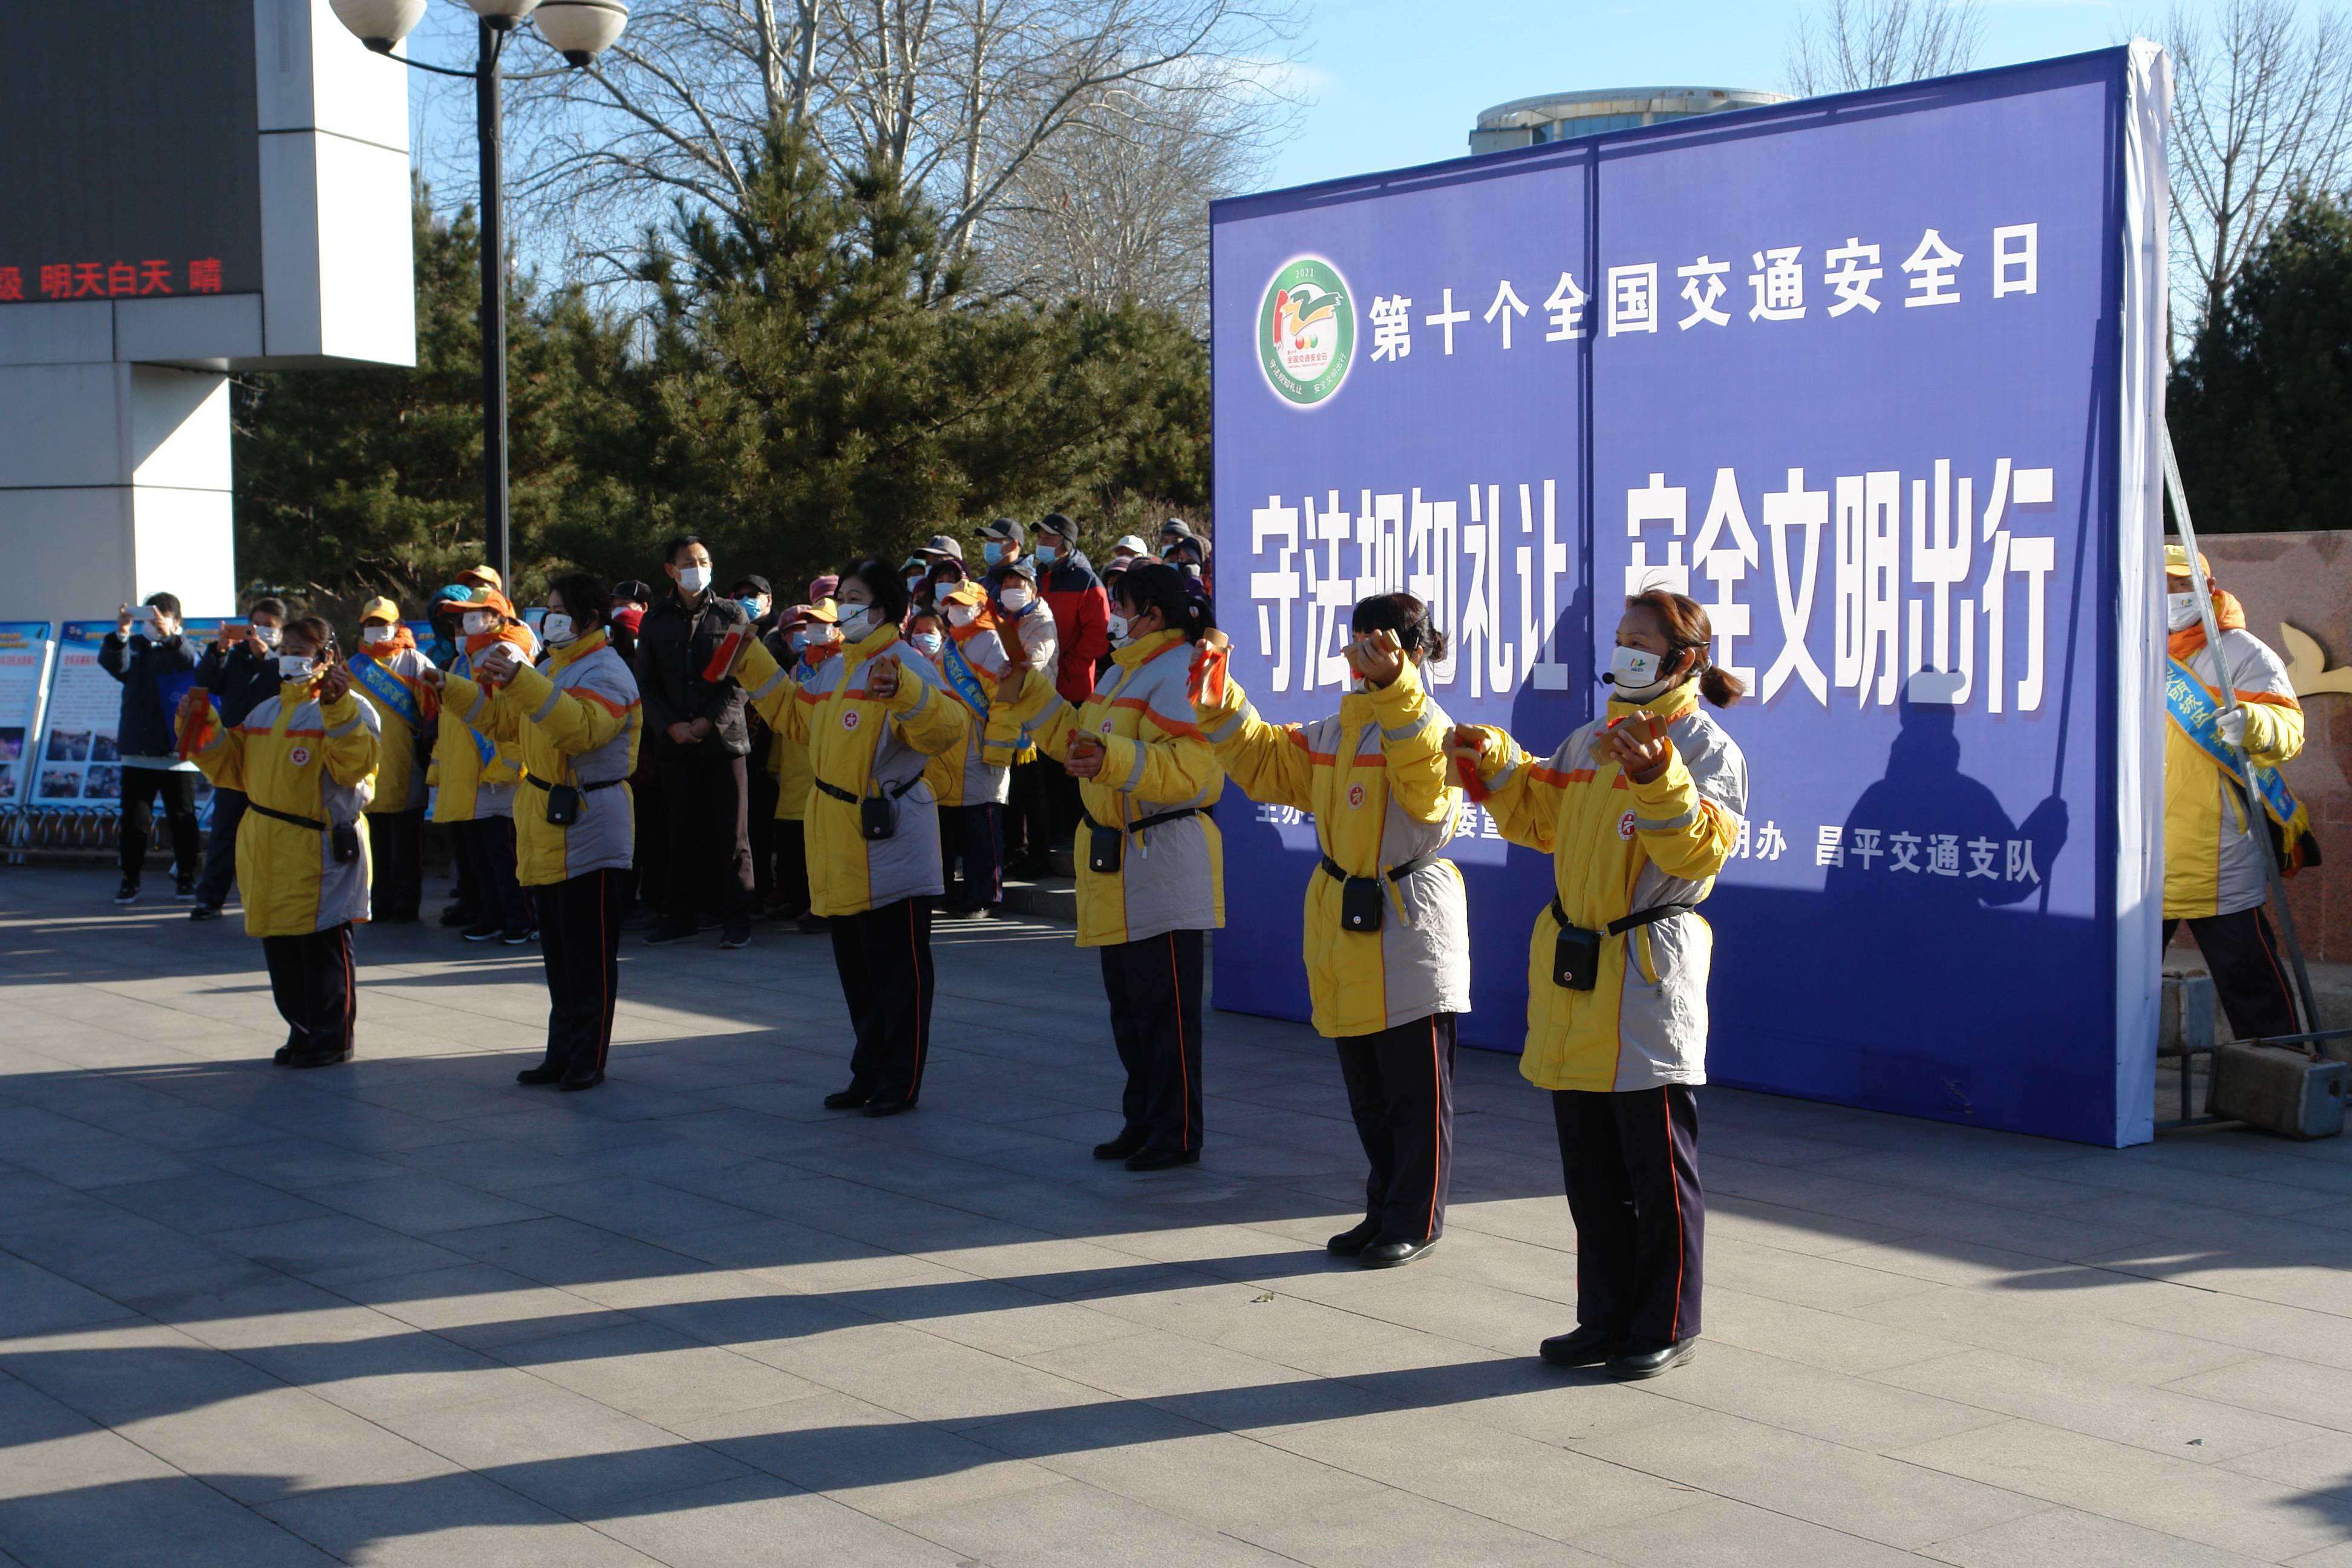 昌平区副区长,公安分局长朱炳文以及区委宣传部,交通支队领导在昌平